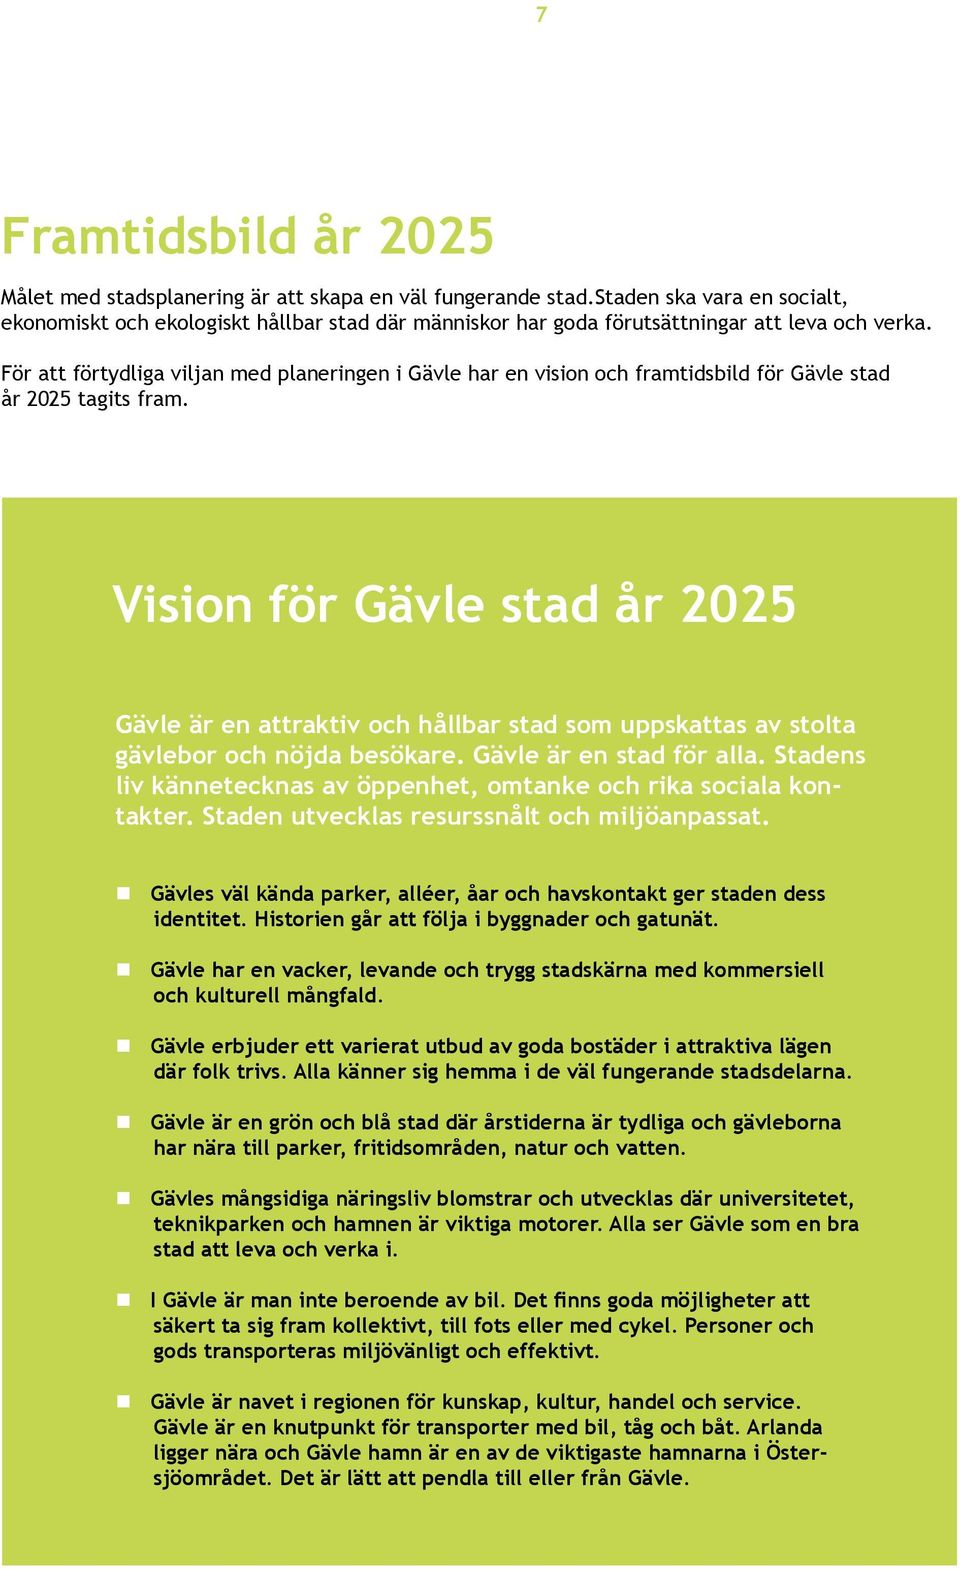 För att förtydliga viljan med planeringen i Gävle har en vision och framtidsbild för Gävle stad år 2025 tagits fram.